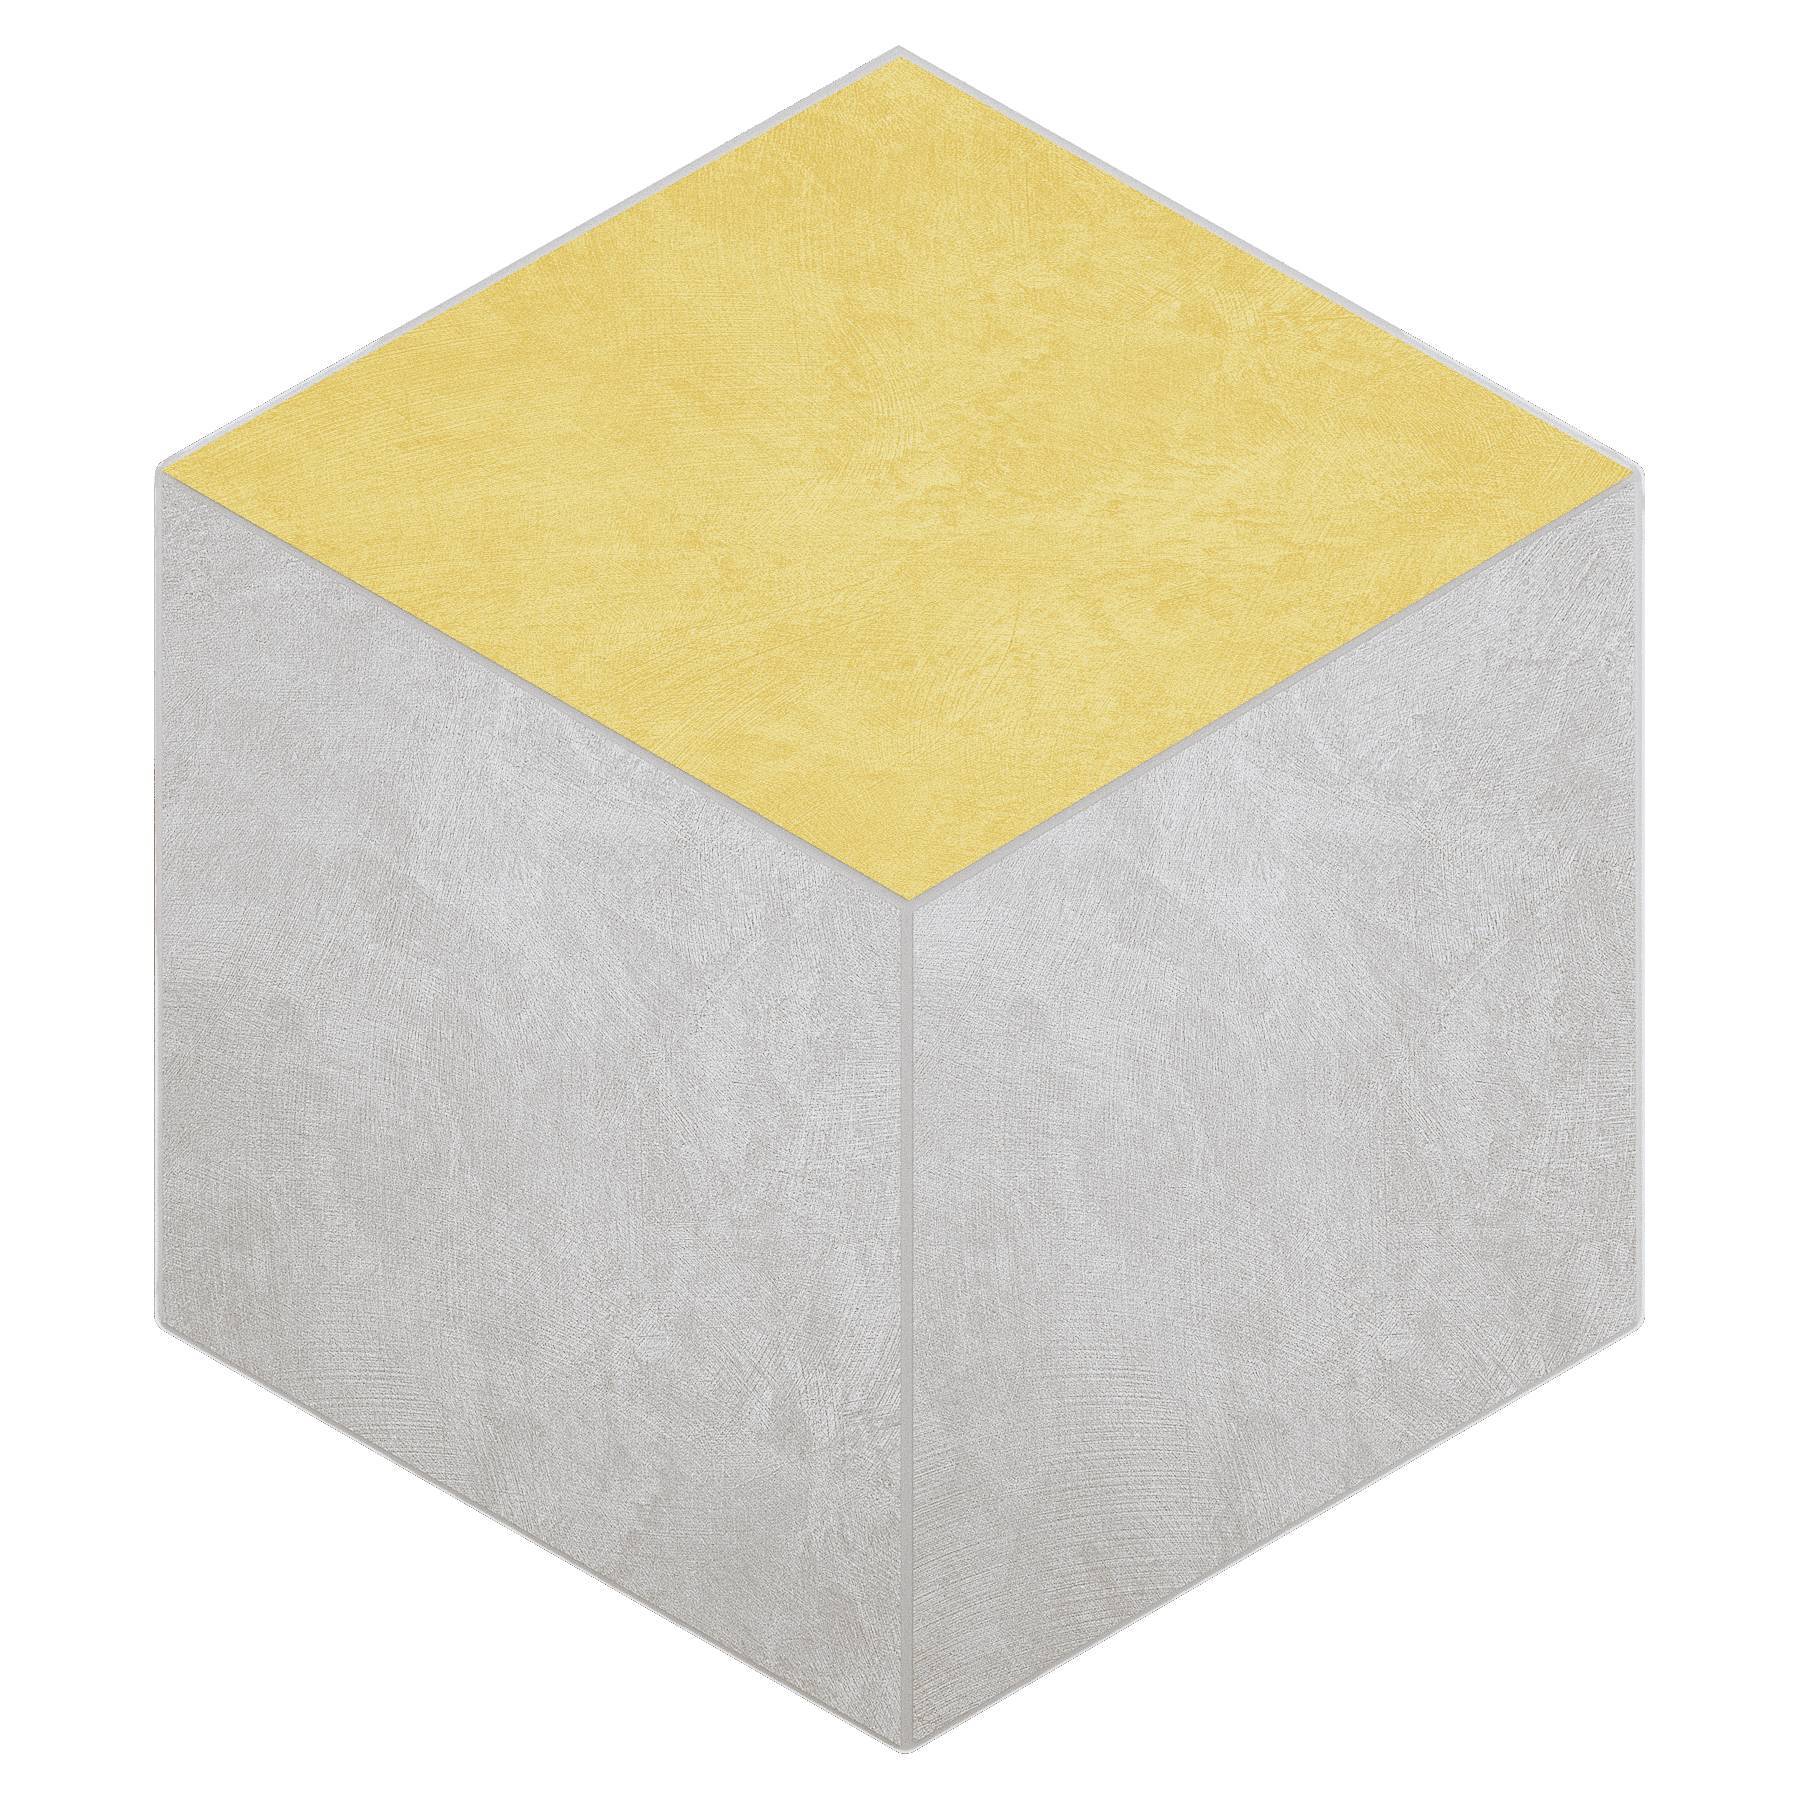 Мозаика Ametis Spectrum Milky White/Yellow SR00/SR04 Cube Непол. 29x25 мозаика ametis spectrum chocolate sr07 cube непол 29x25